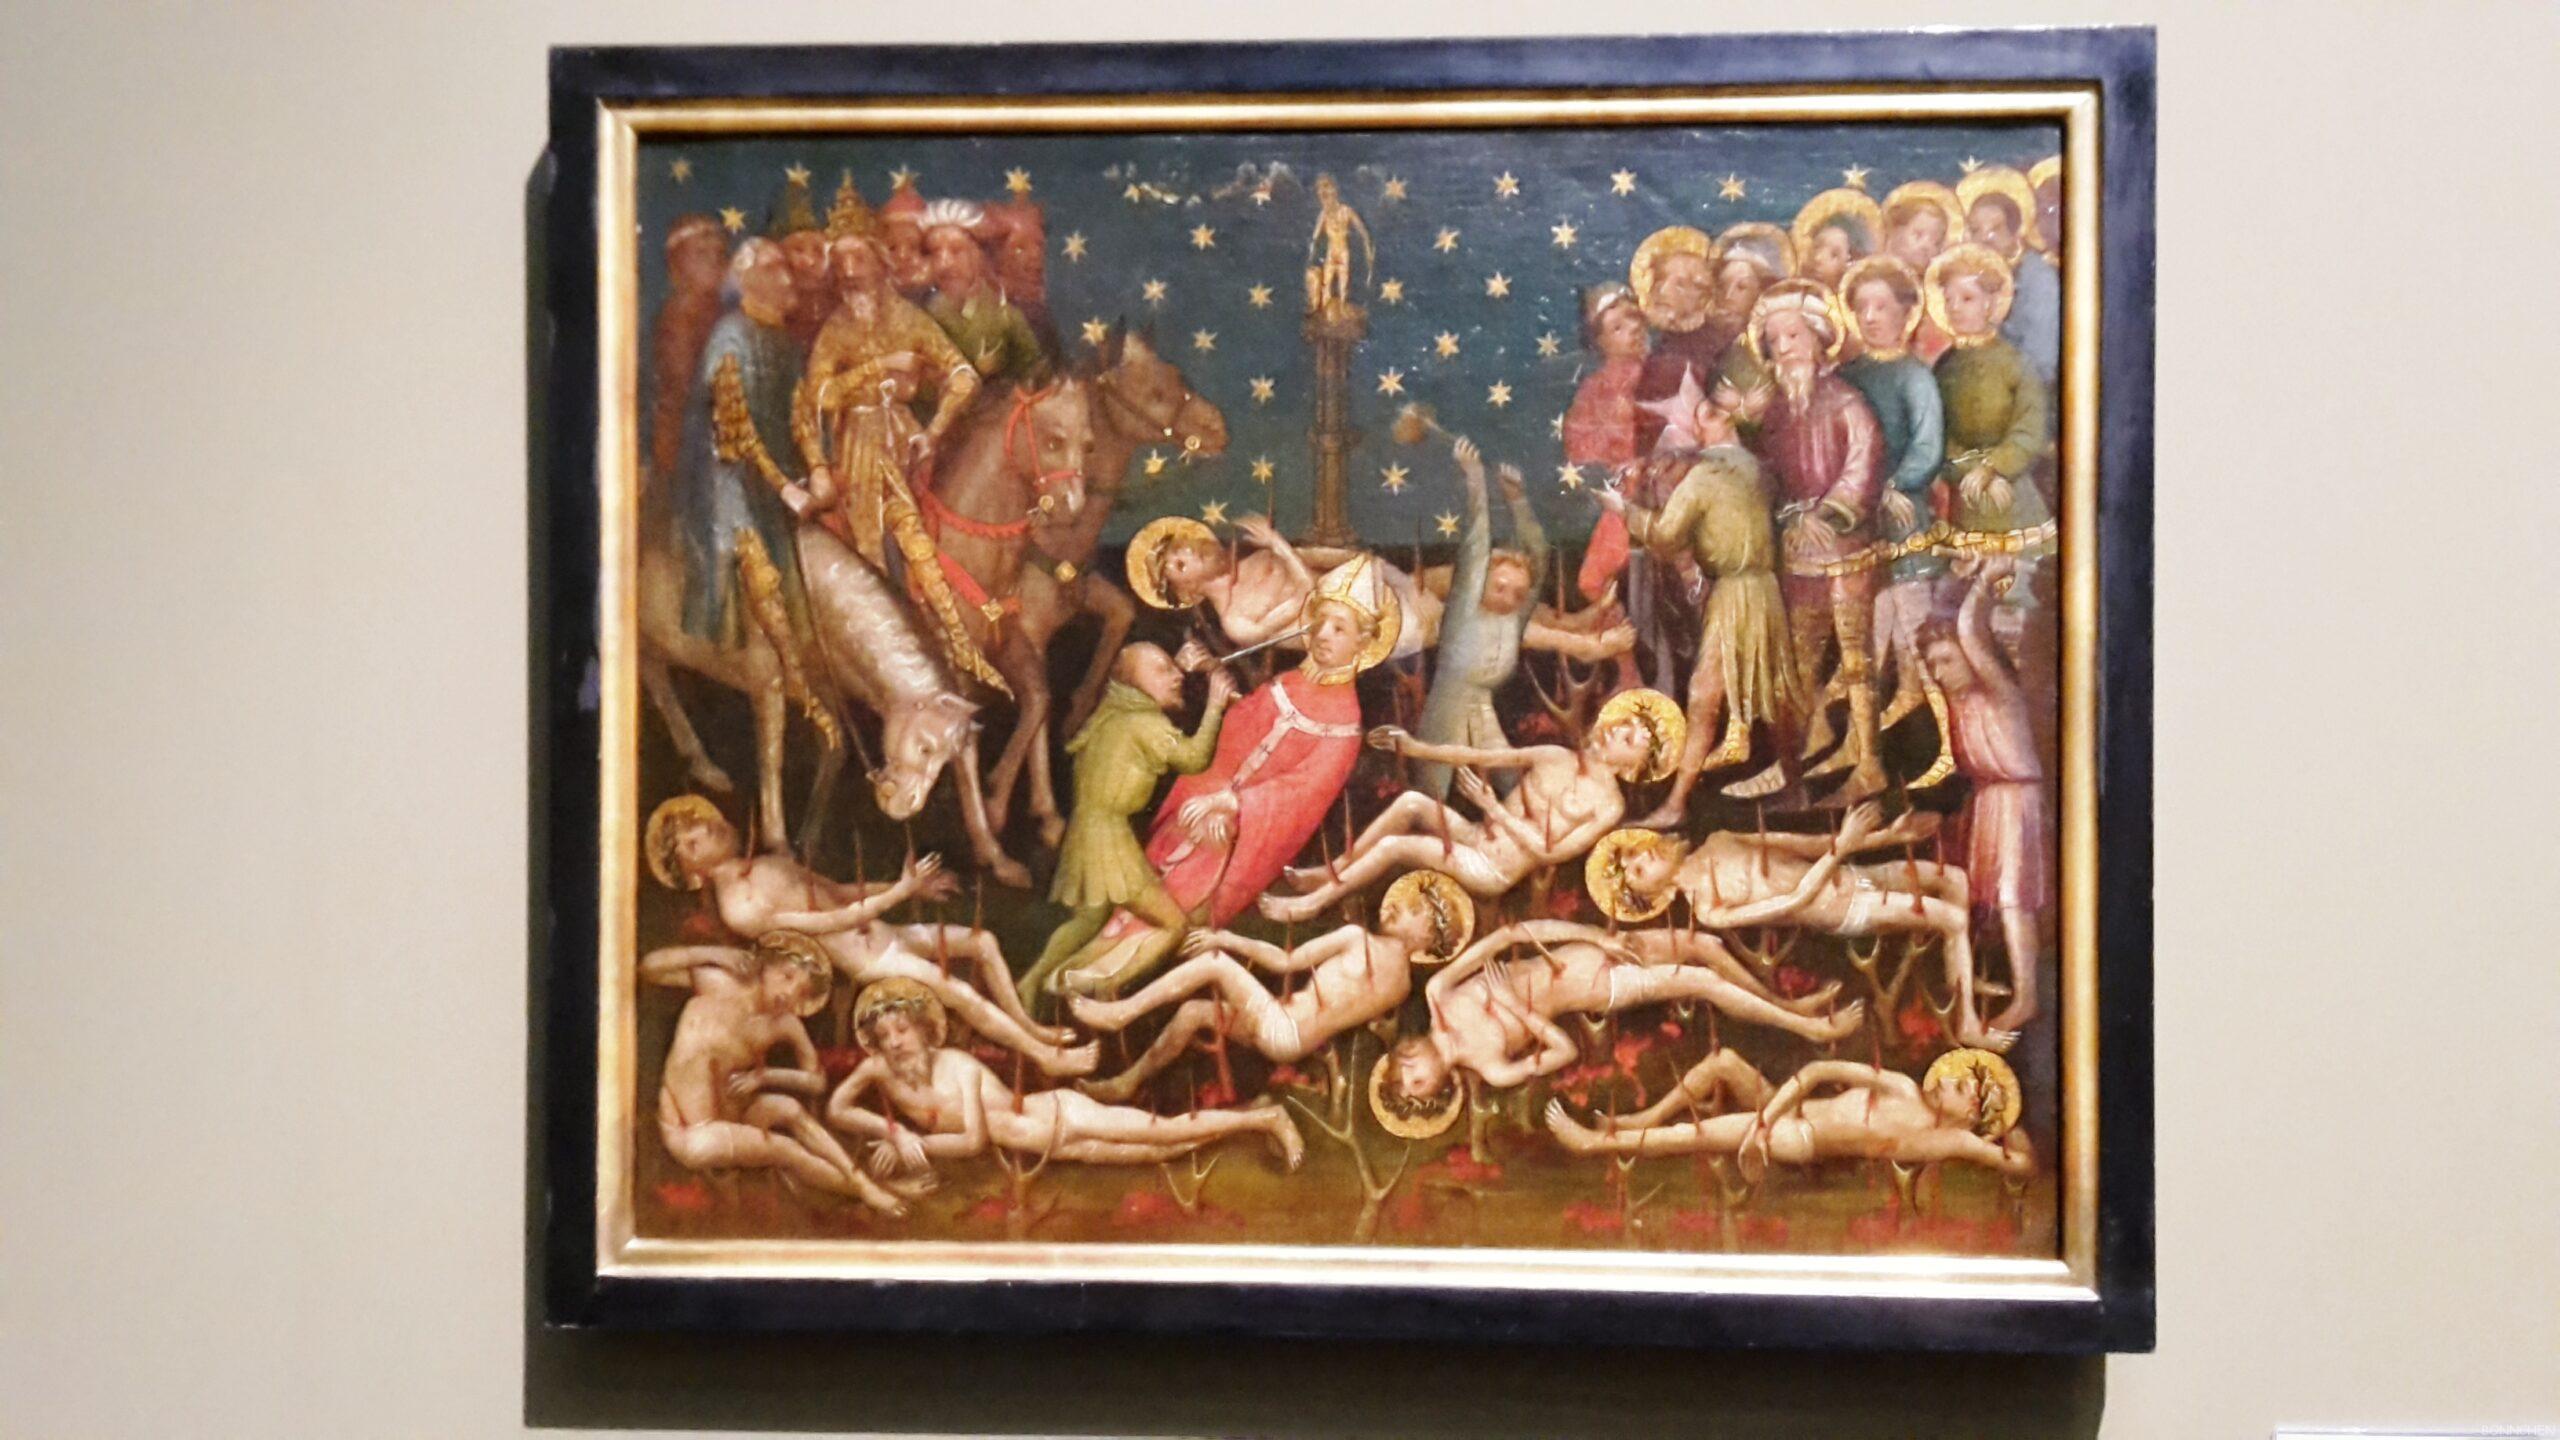 Gemälde Marter der zehntausend Christen von Albrecht Dürer im Wallraf-Richartz-Museum